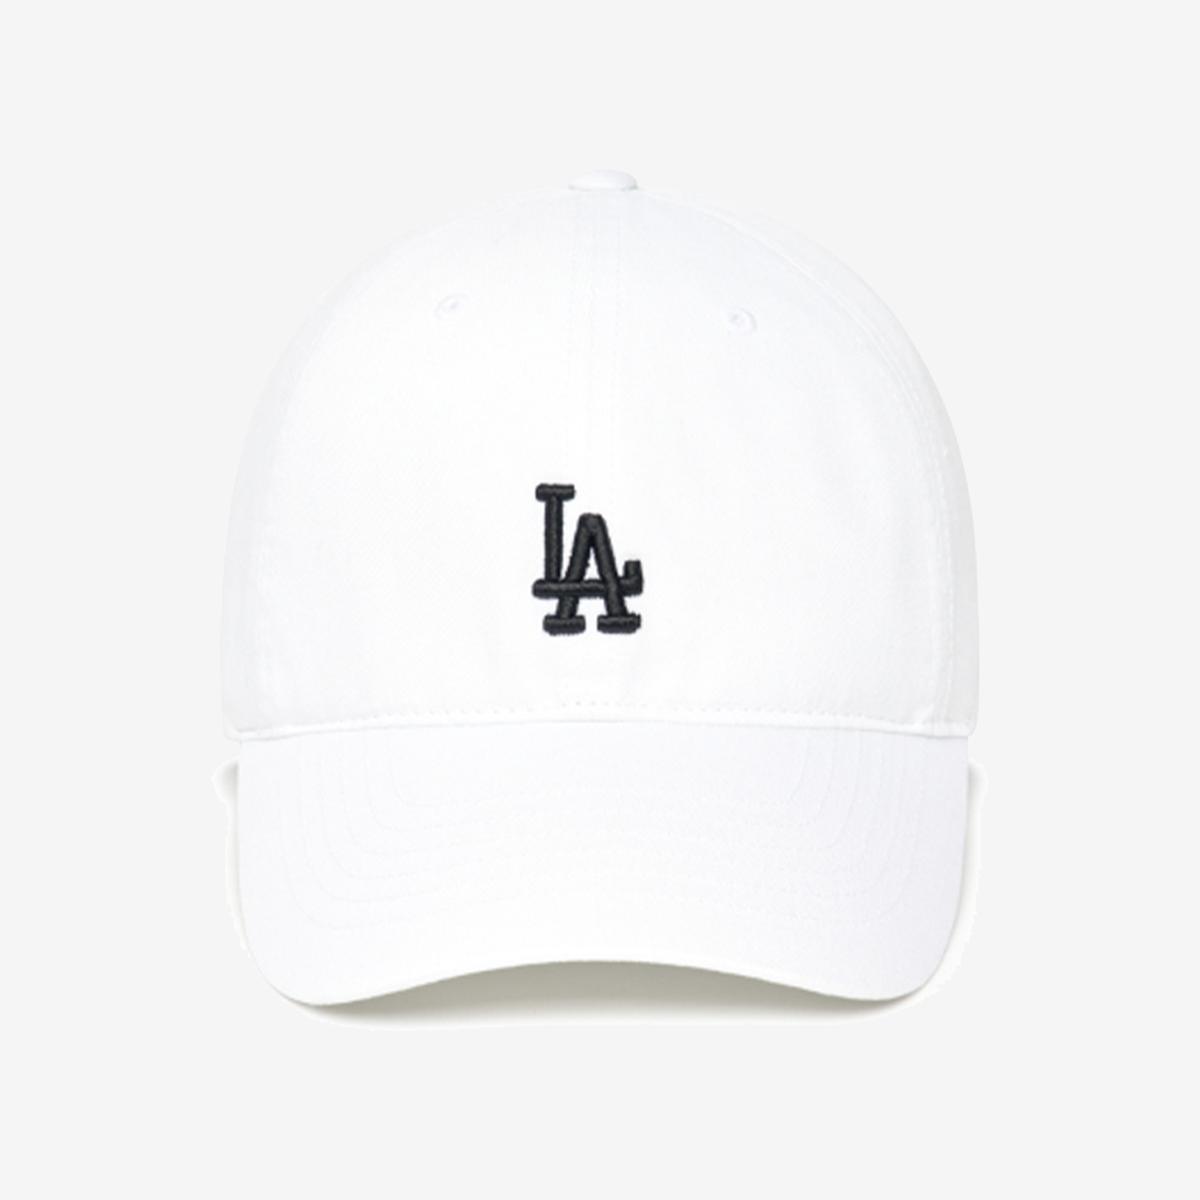 洛杉磯道奇隊棒球帽